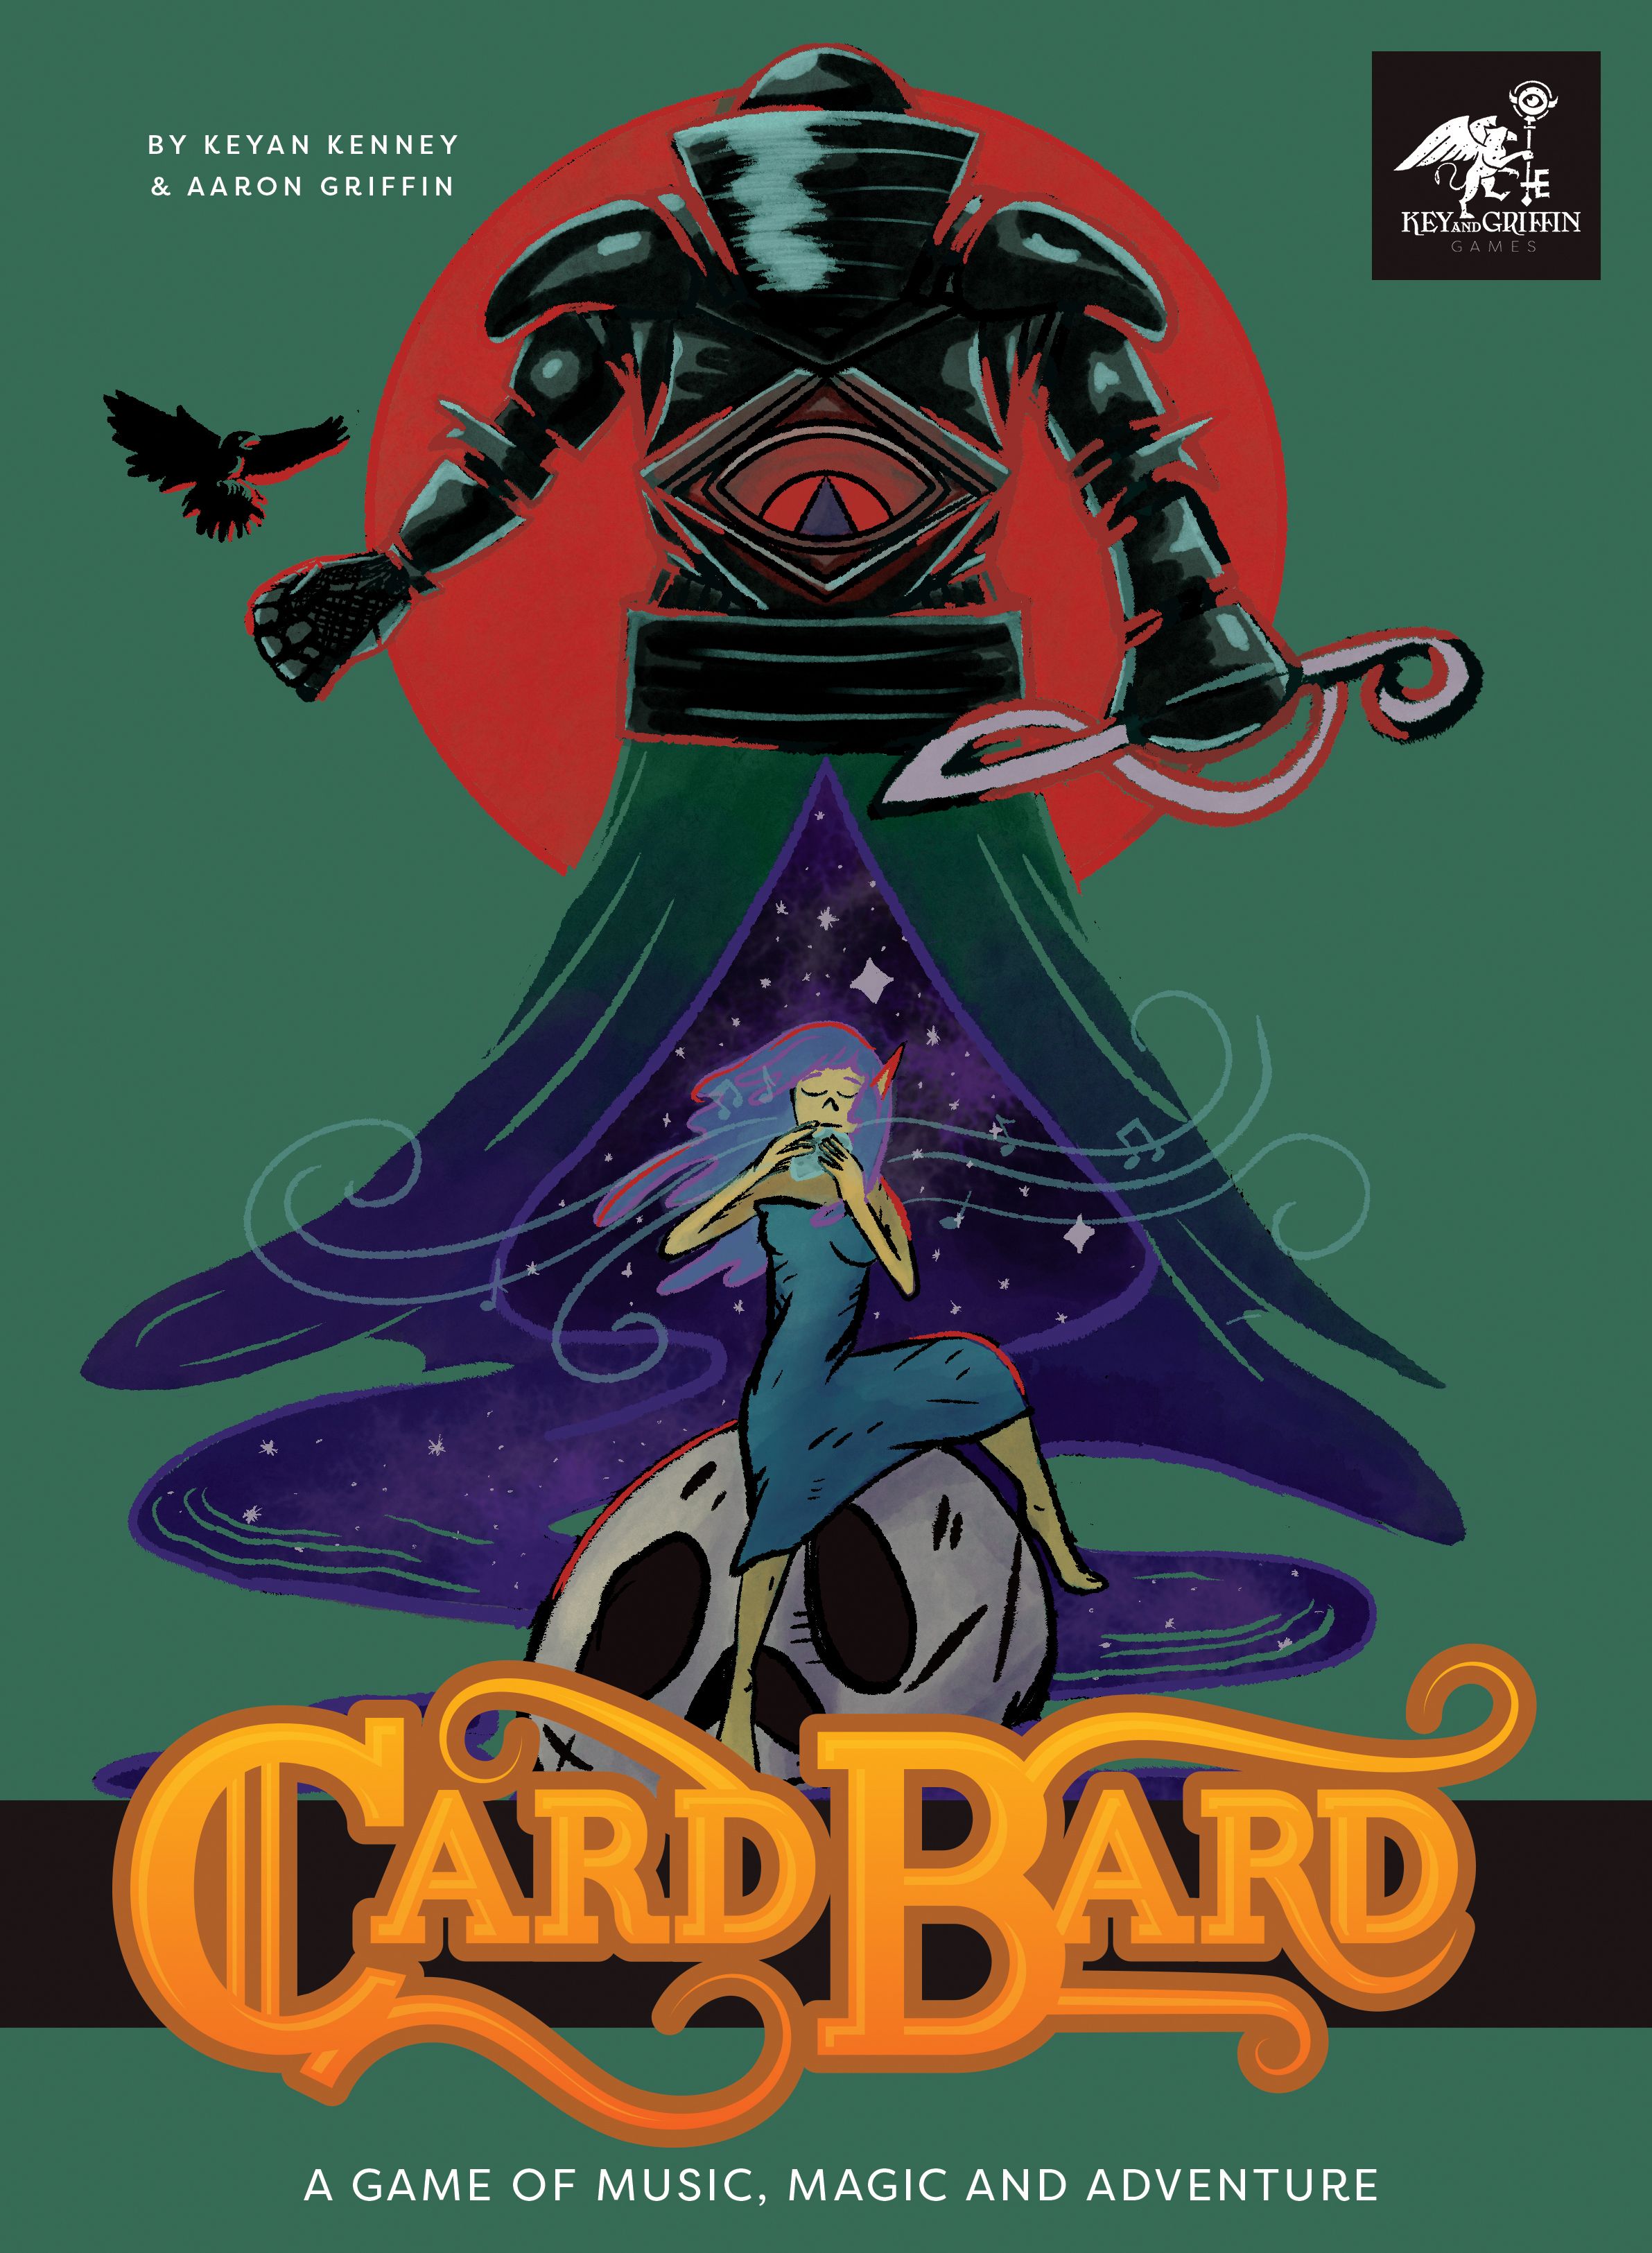 Card Bard